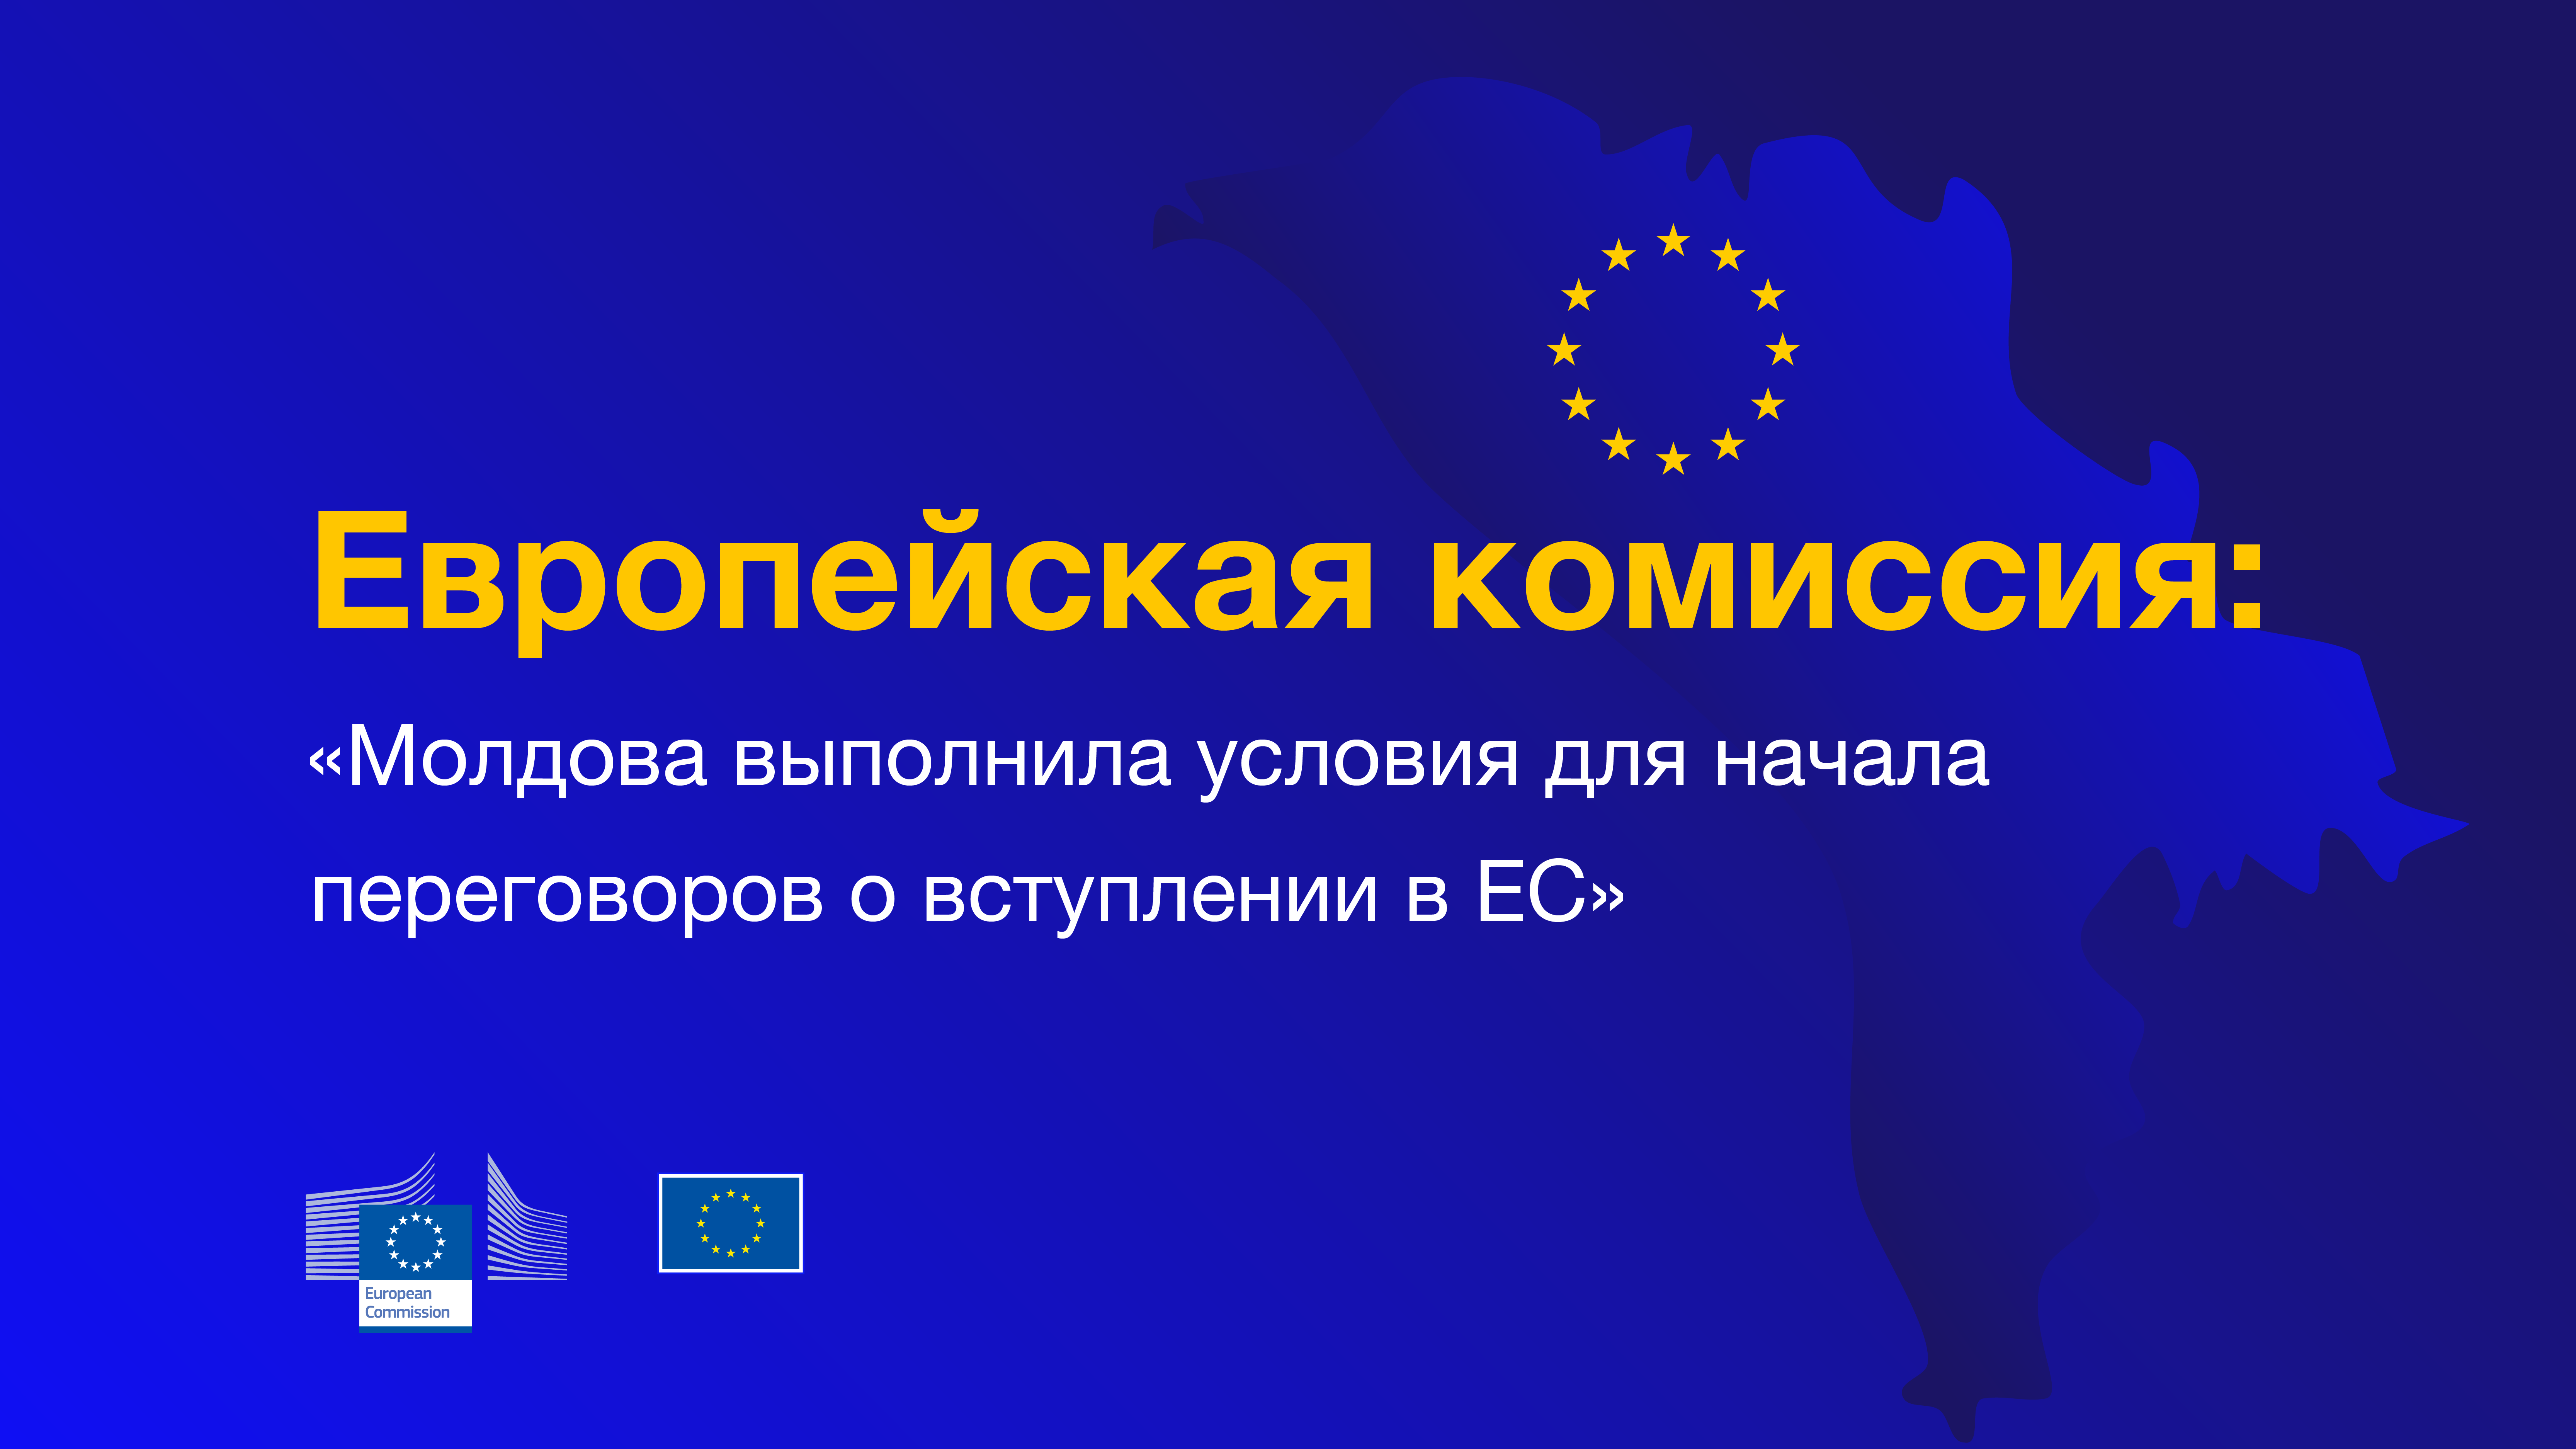 Еврокомиссия подтвердила, что Республика Молдова выполнила предварительные условия для начала переговоров о вступлении в Евроcоюз